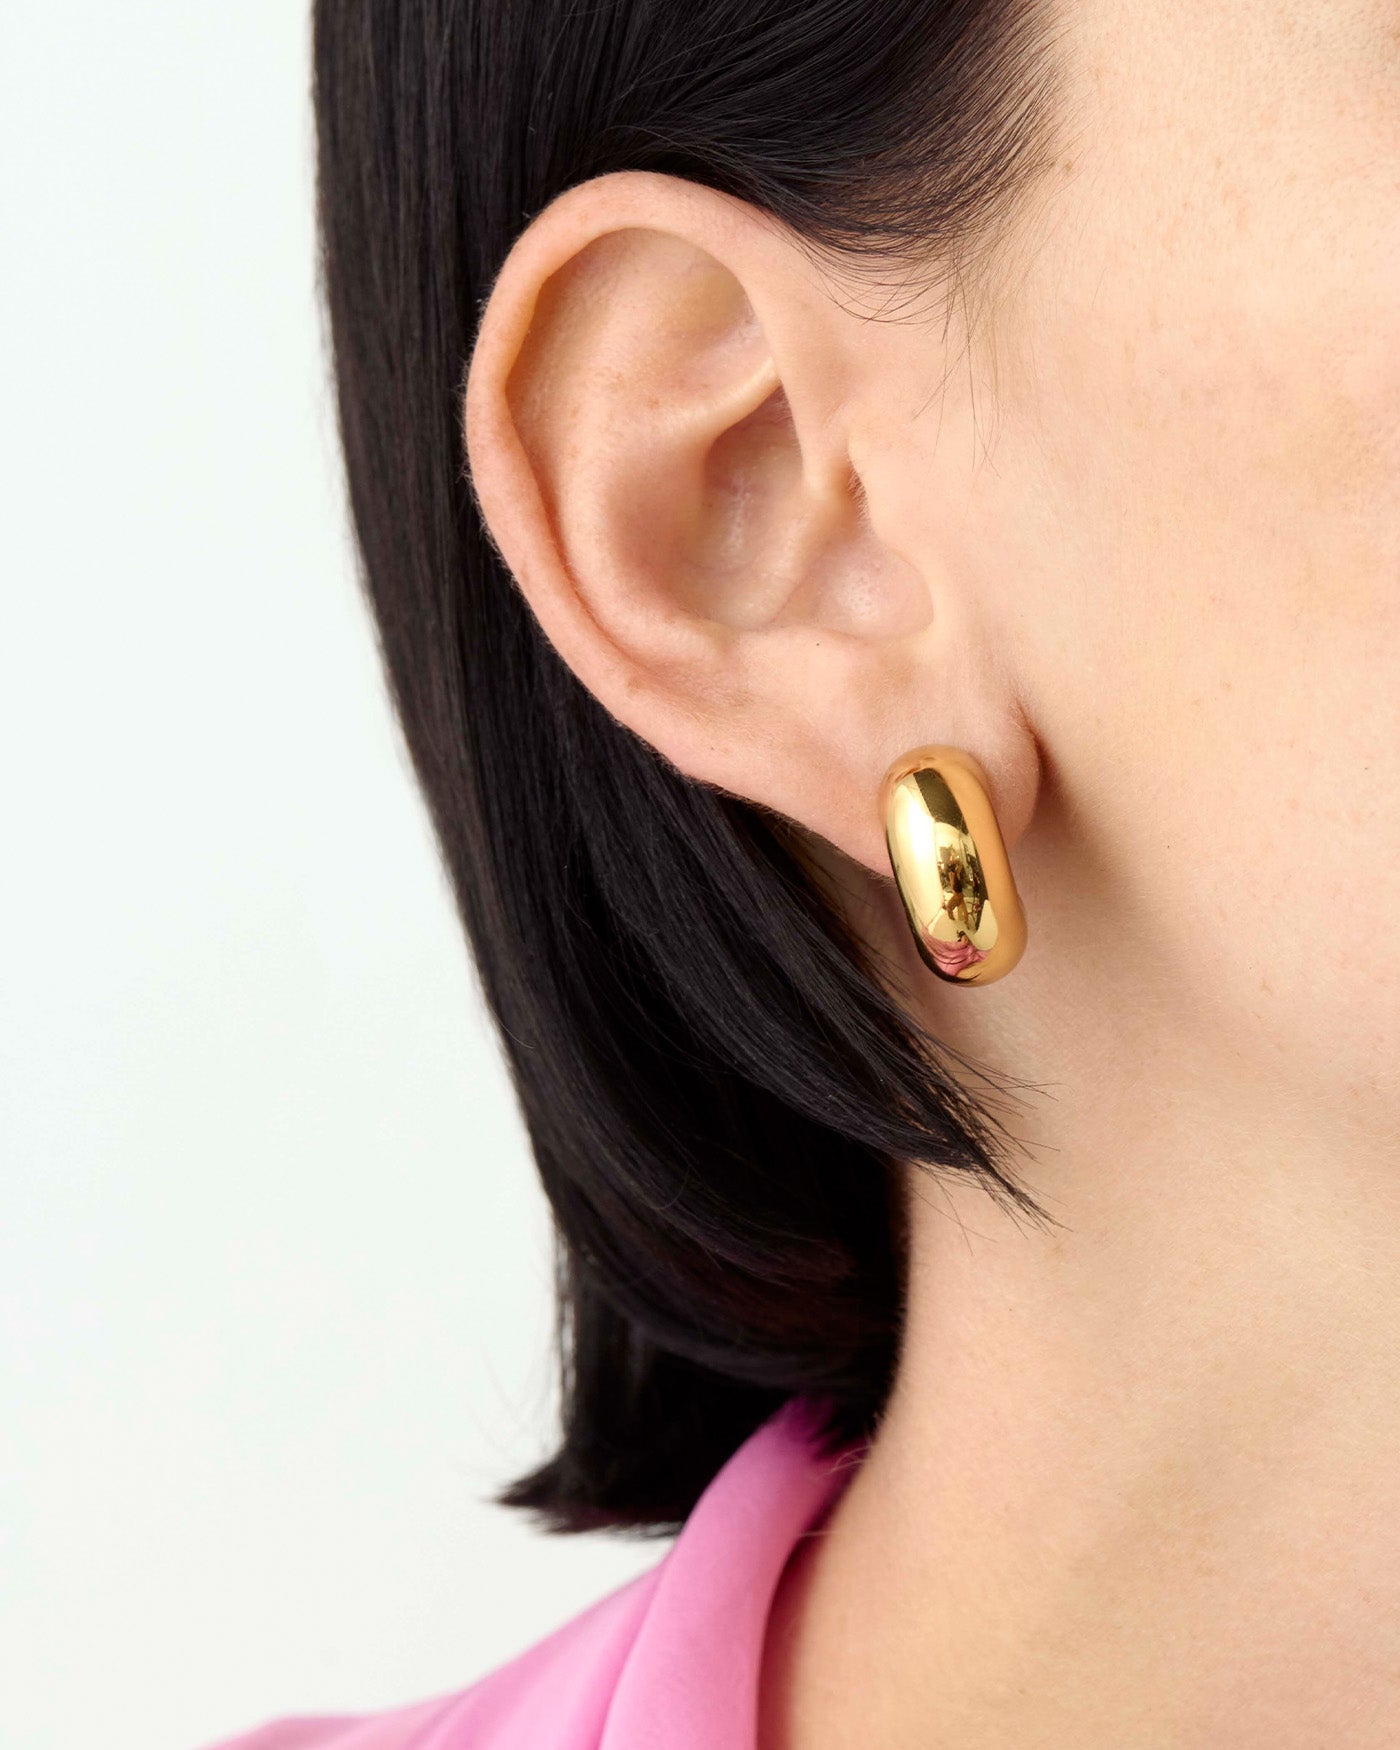 Buy Gold Ethnic Hoop Earrings Online - W for Woman